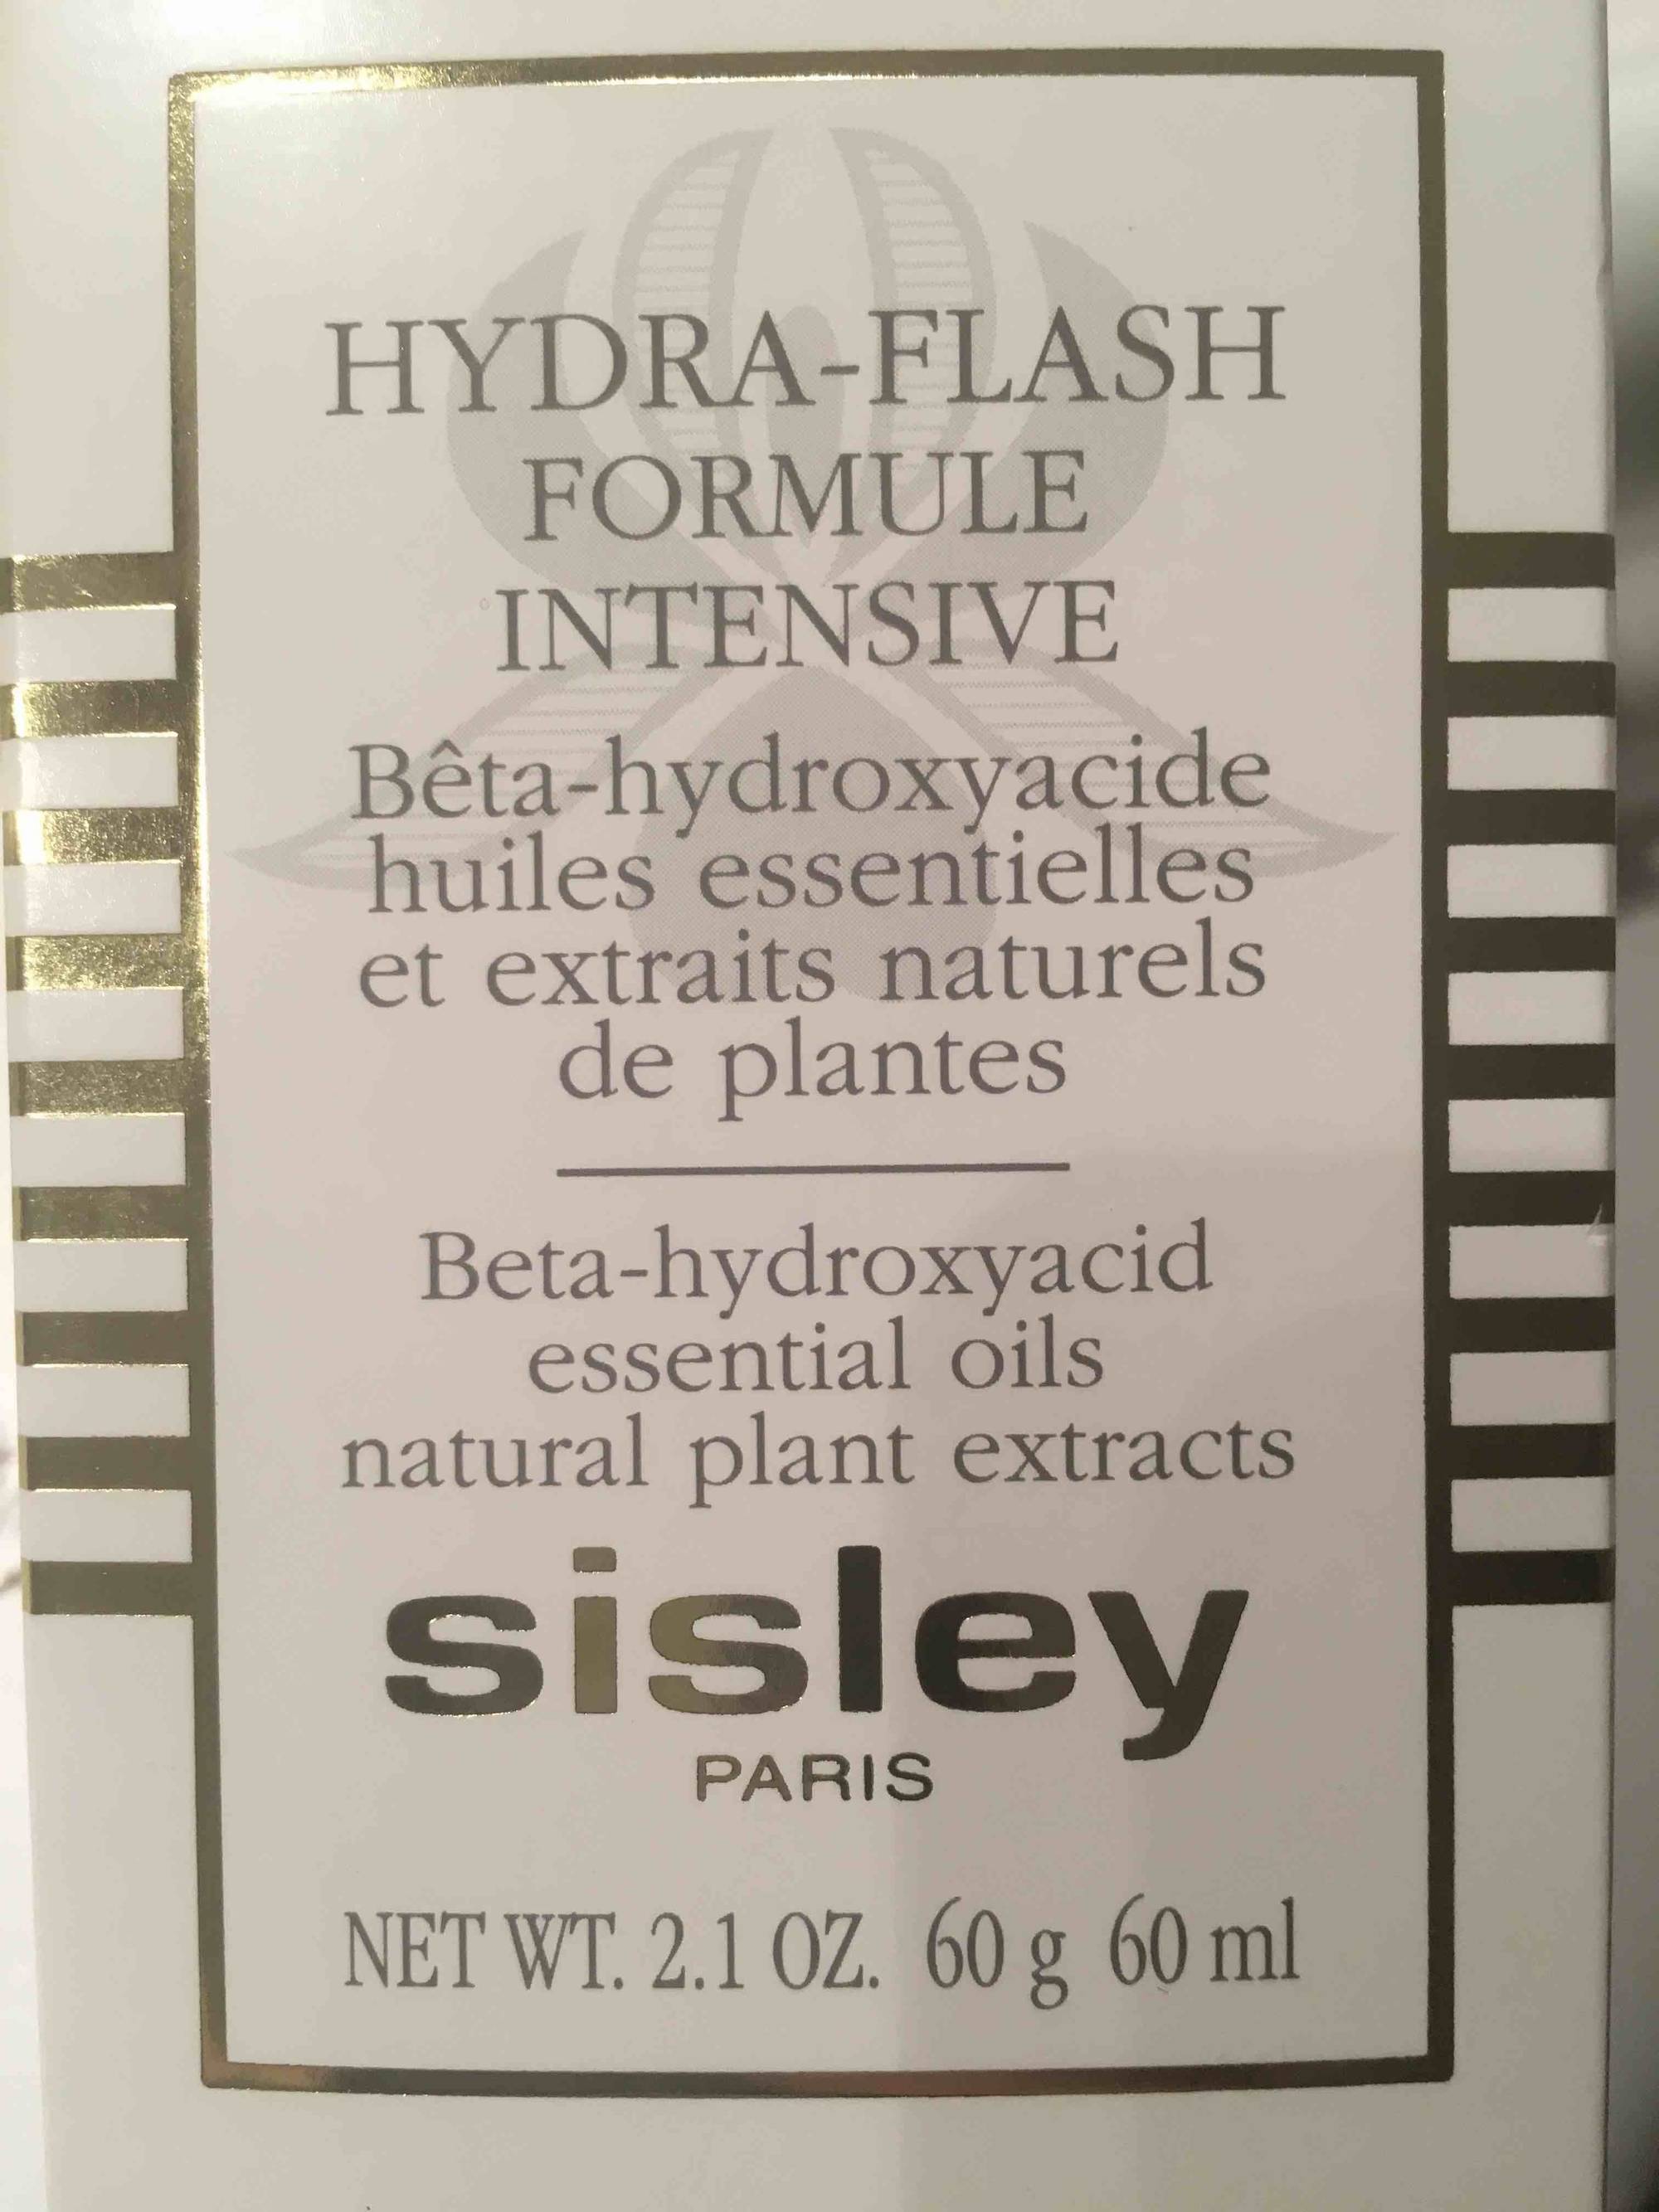 SISLEY PARIS - Hydra-flash formule intensive